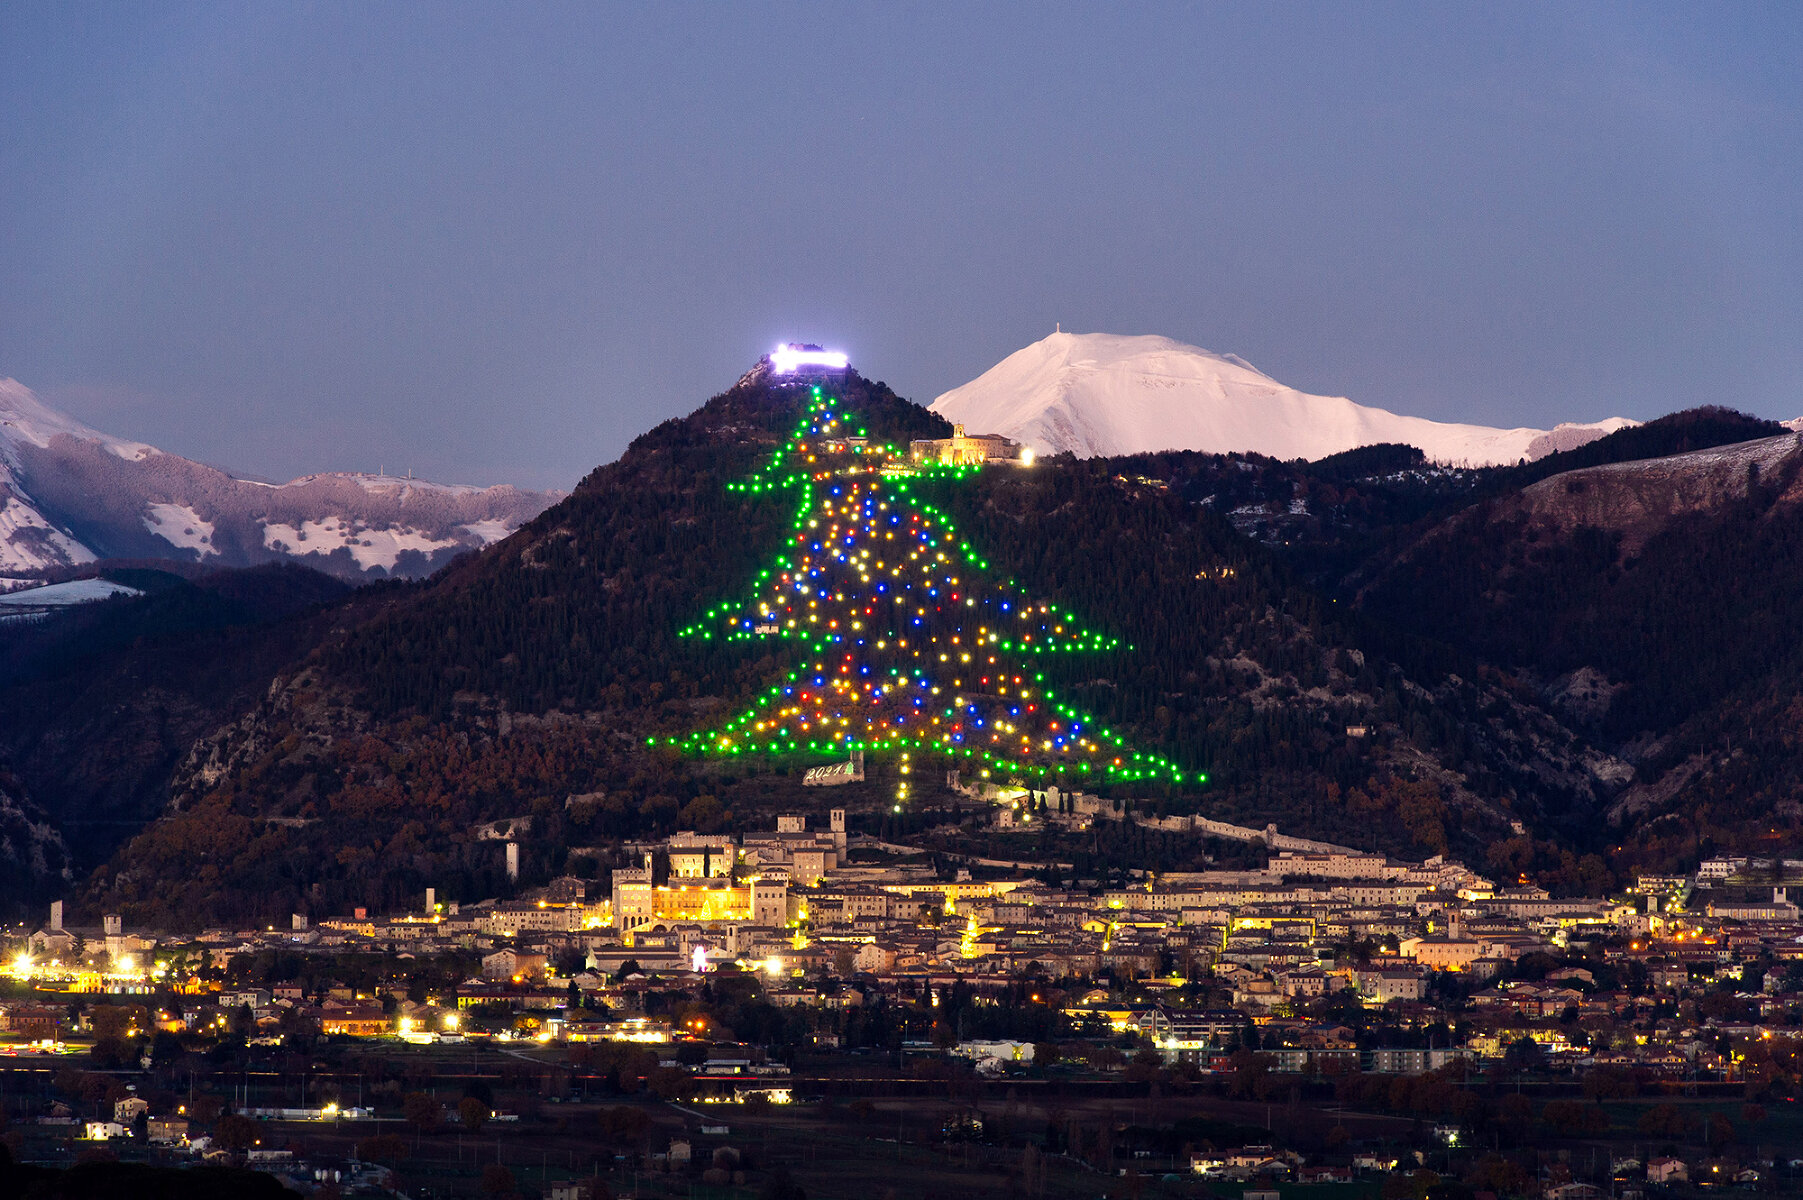 <p>Самая большое изображение&nbsp;рождественской&nbsp;ели&nbsp;в мире высотой 750 метров, которая обновила рекорд Гиннеса впервые с 1991 года, на горе Инджино в итальянской коммуне Губбио, 12 декабря 2021 года</p>